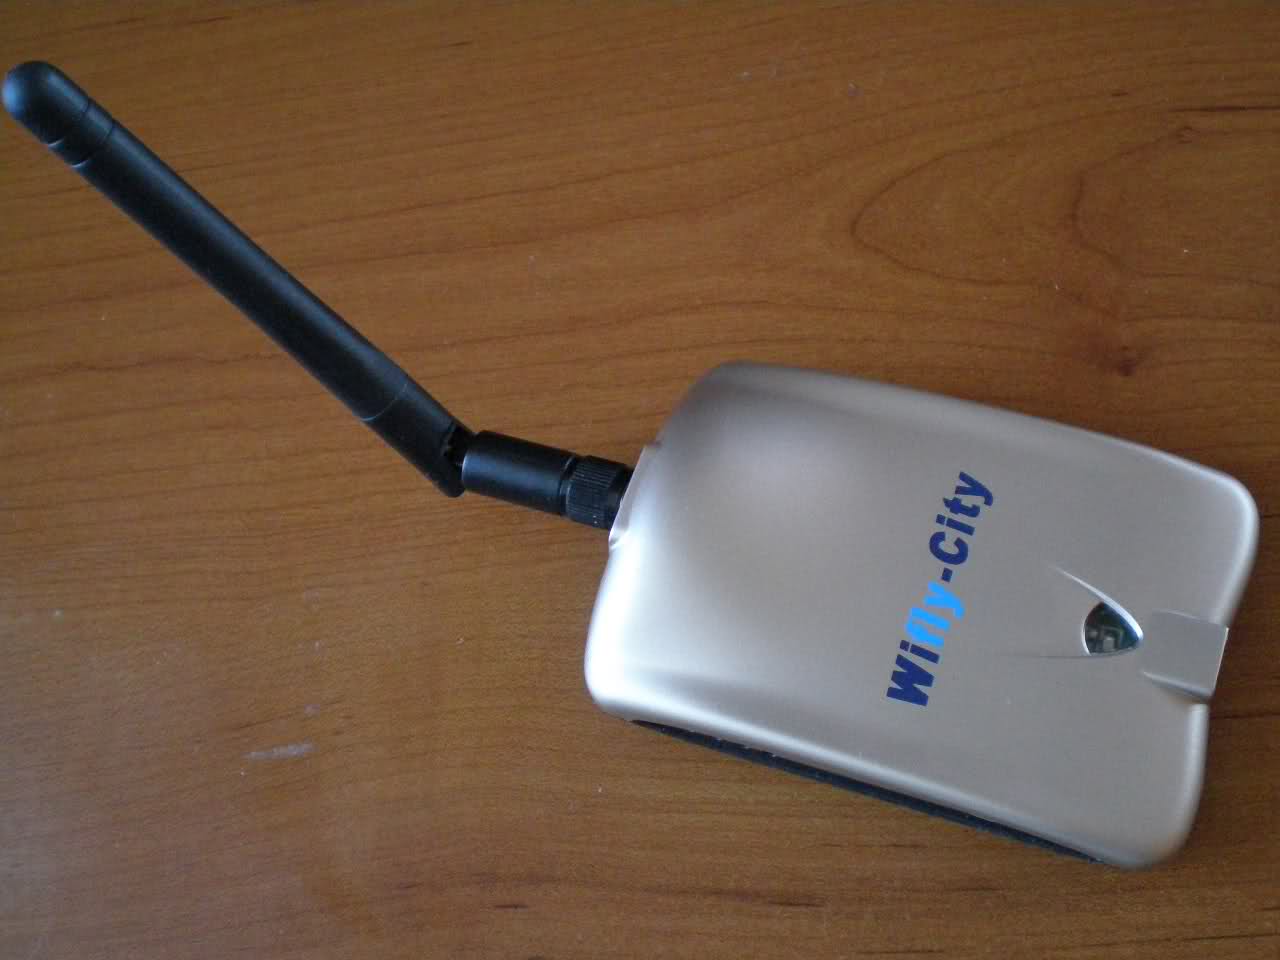  SATILMIŞTIR 800mW WiFLY-CiTY YÜKSEK MENZİLLİ USB ALICI - SIFIR KUTUSUNDA